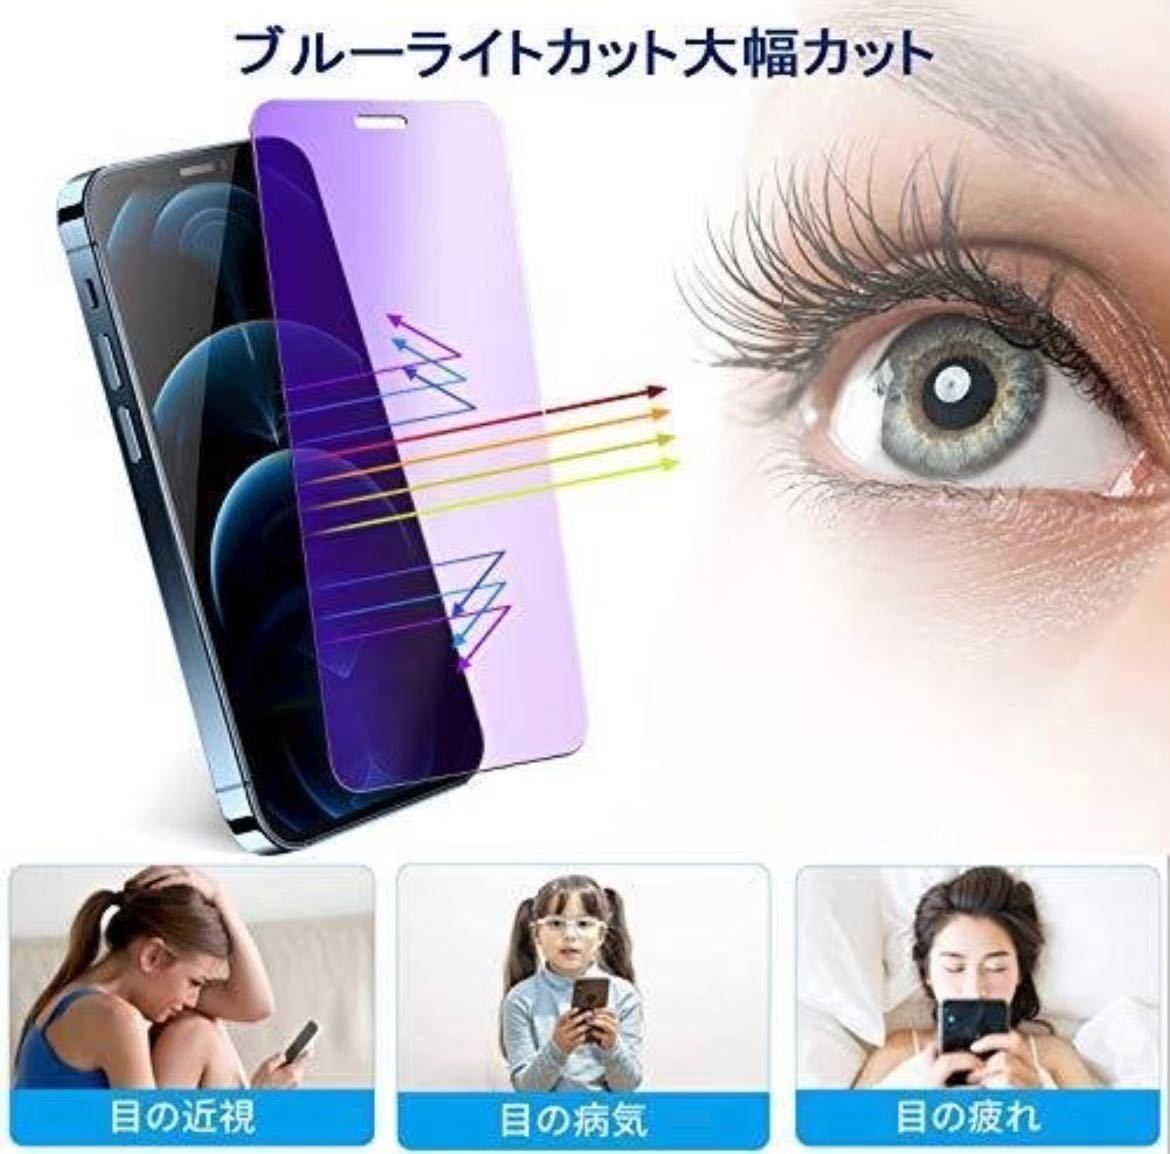 2枚セット【iPhoneX.XS】世界のゴリラガラス　ブルーライト99%カットガラスフィルム